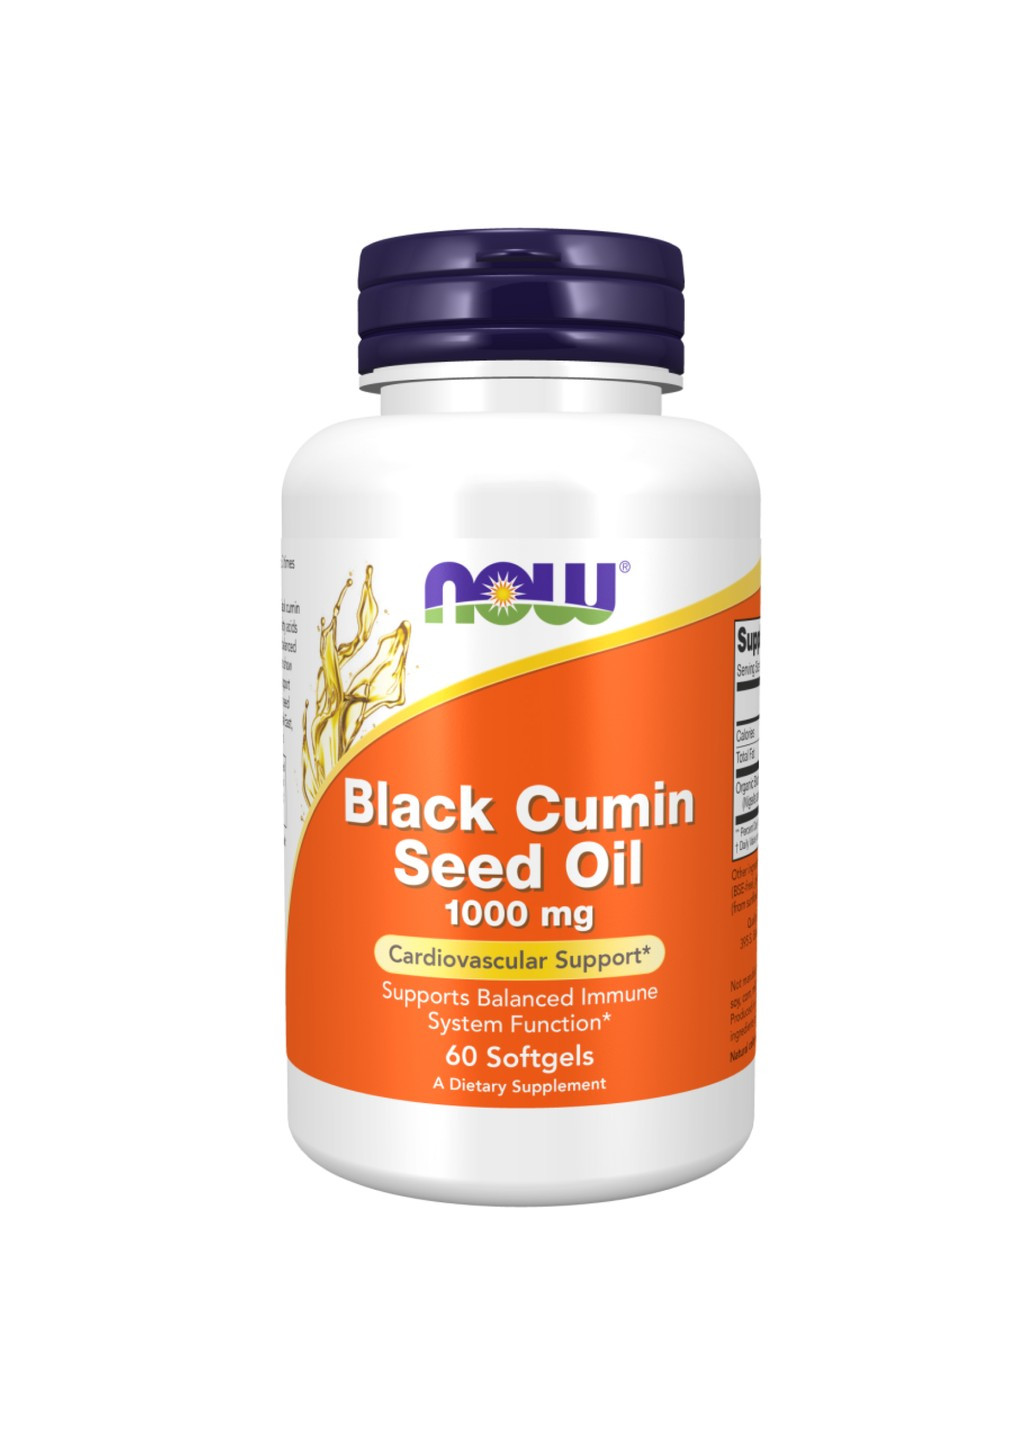 Масло Семена Черного Тмина Black Cumin Seed Oil - 1000мг - 60 софтгель Now Foods (269461796)